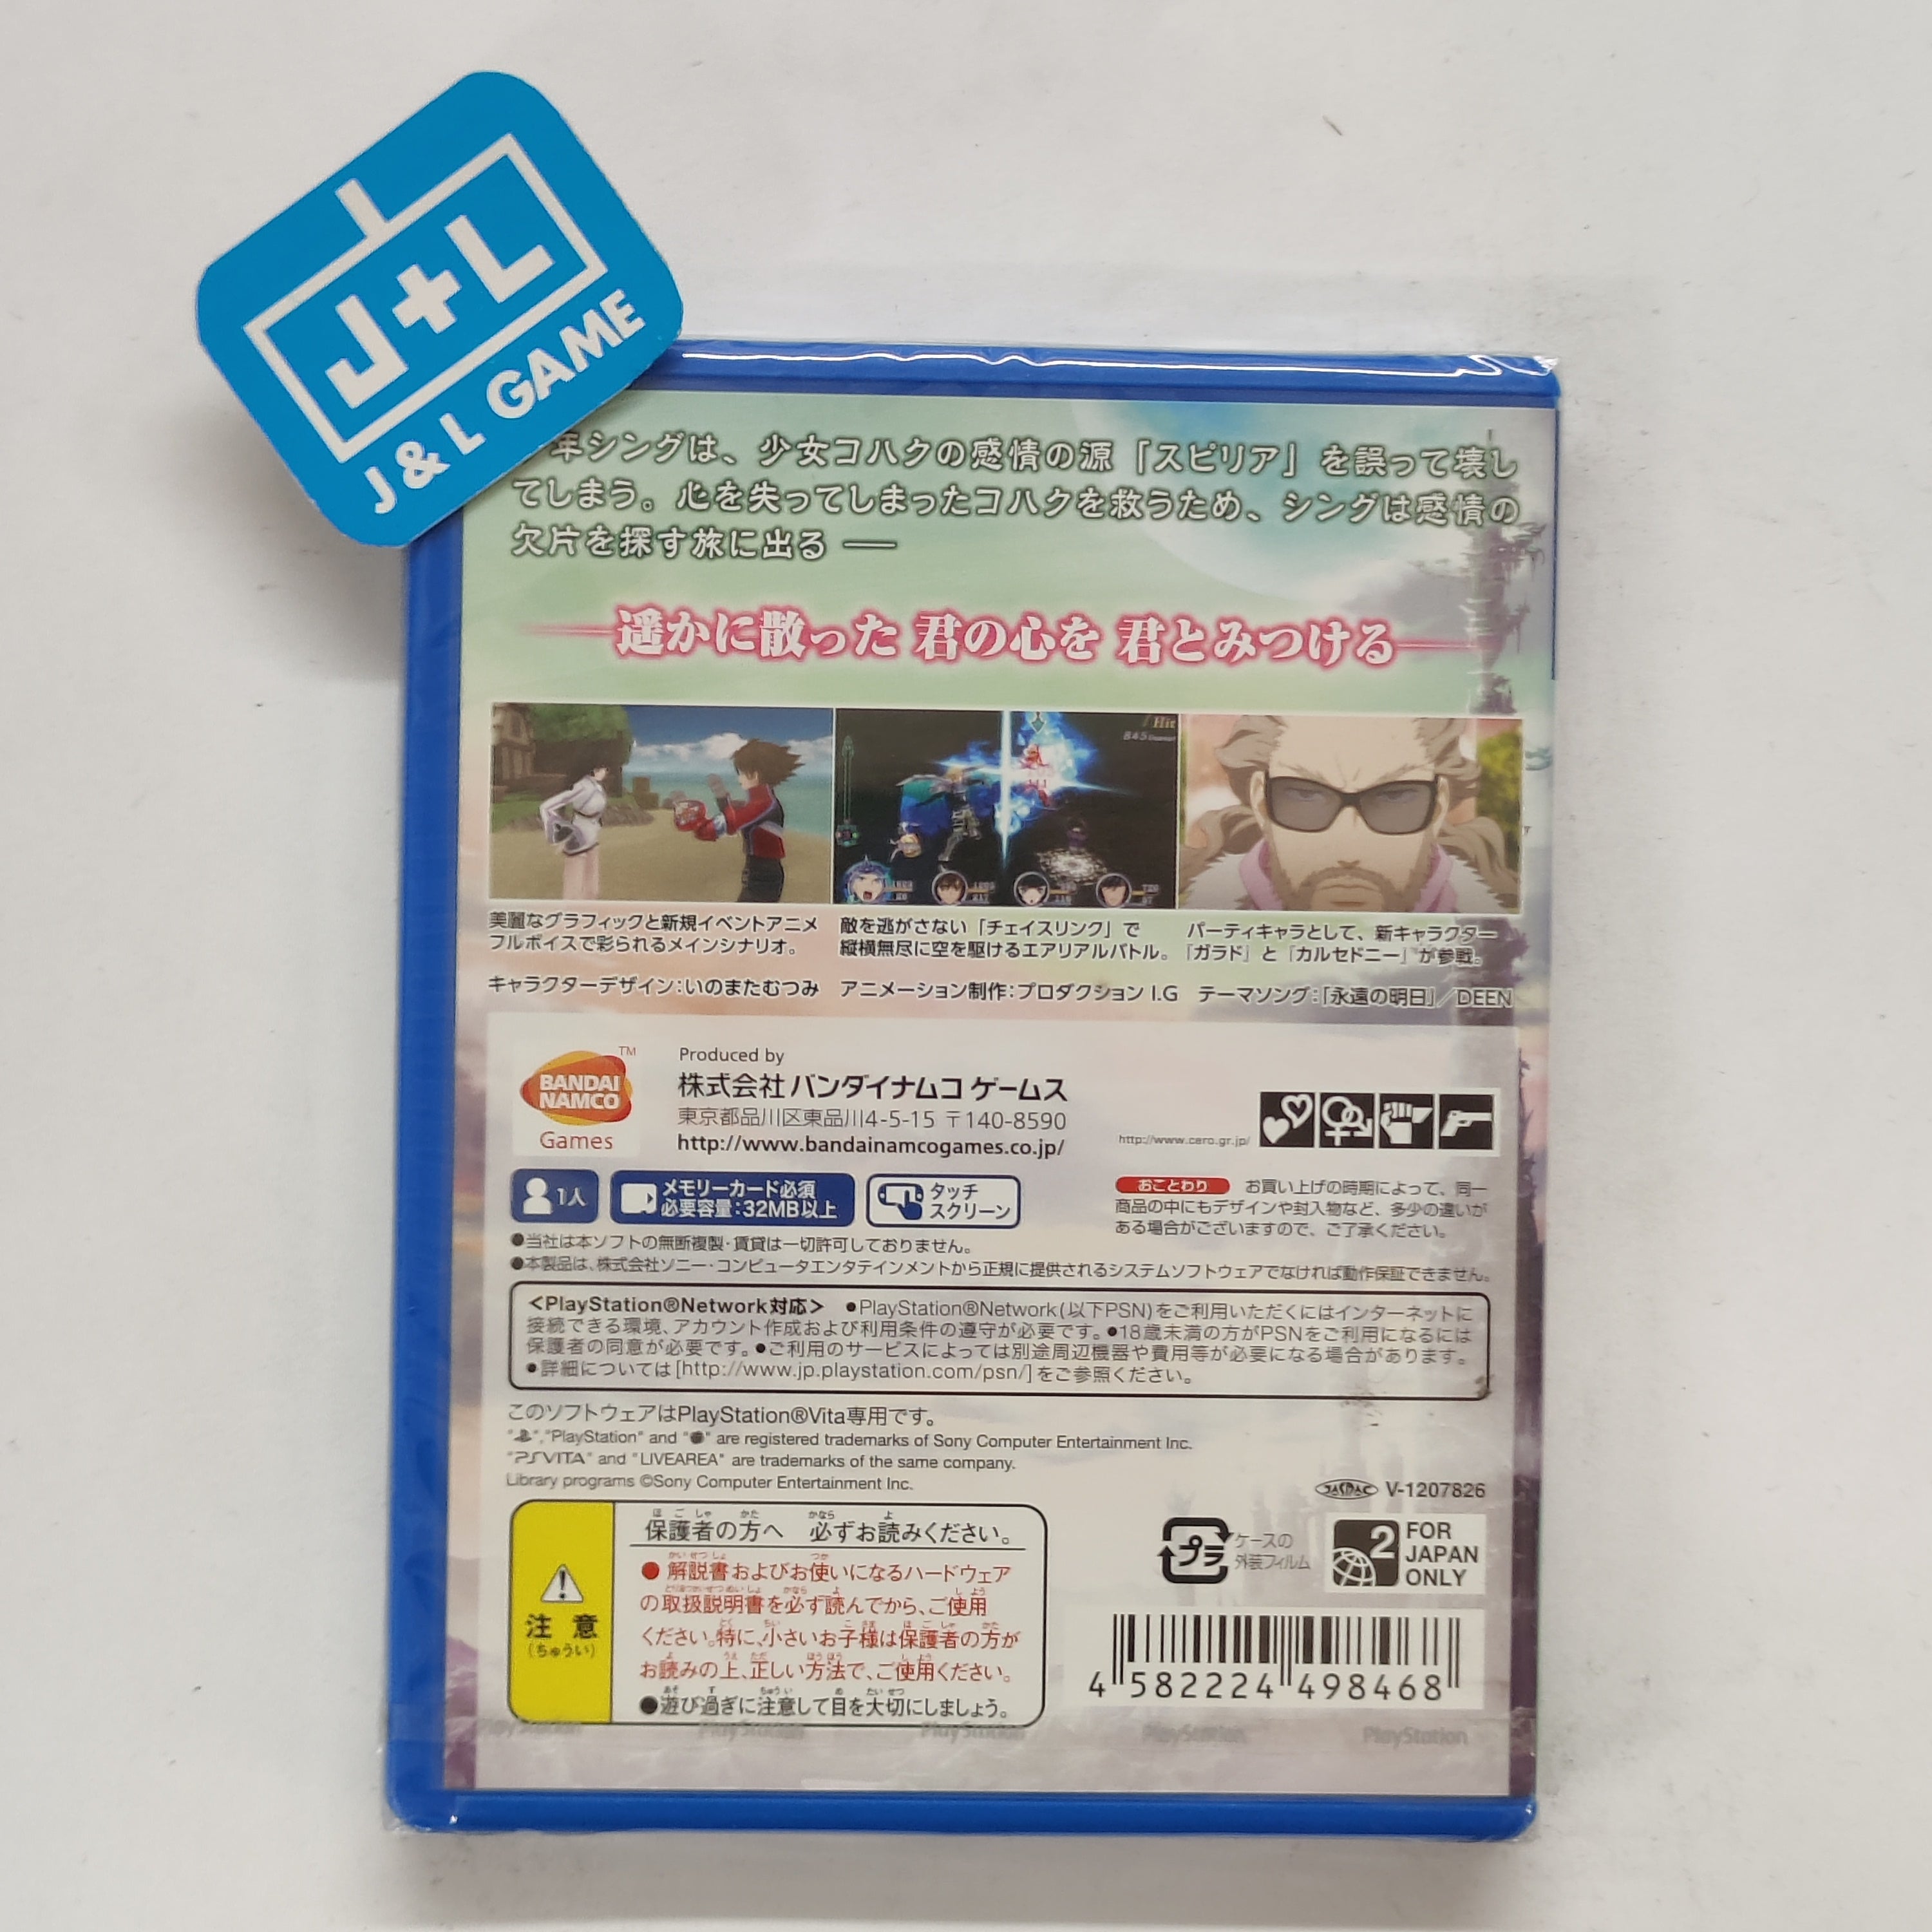 Tales of Hearts R - (PSV) PlayStation Vita (Japanese Import) Video Games Bandai Namco Games   